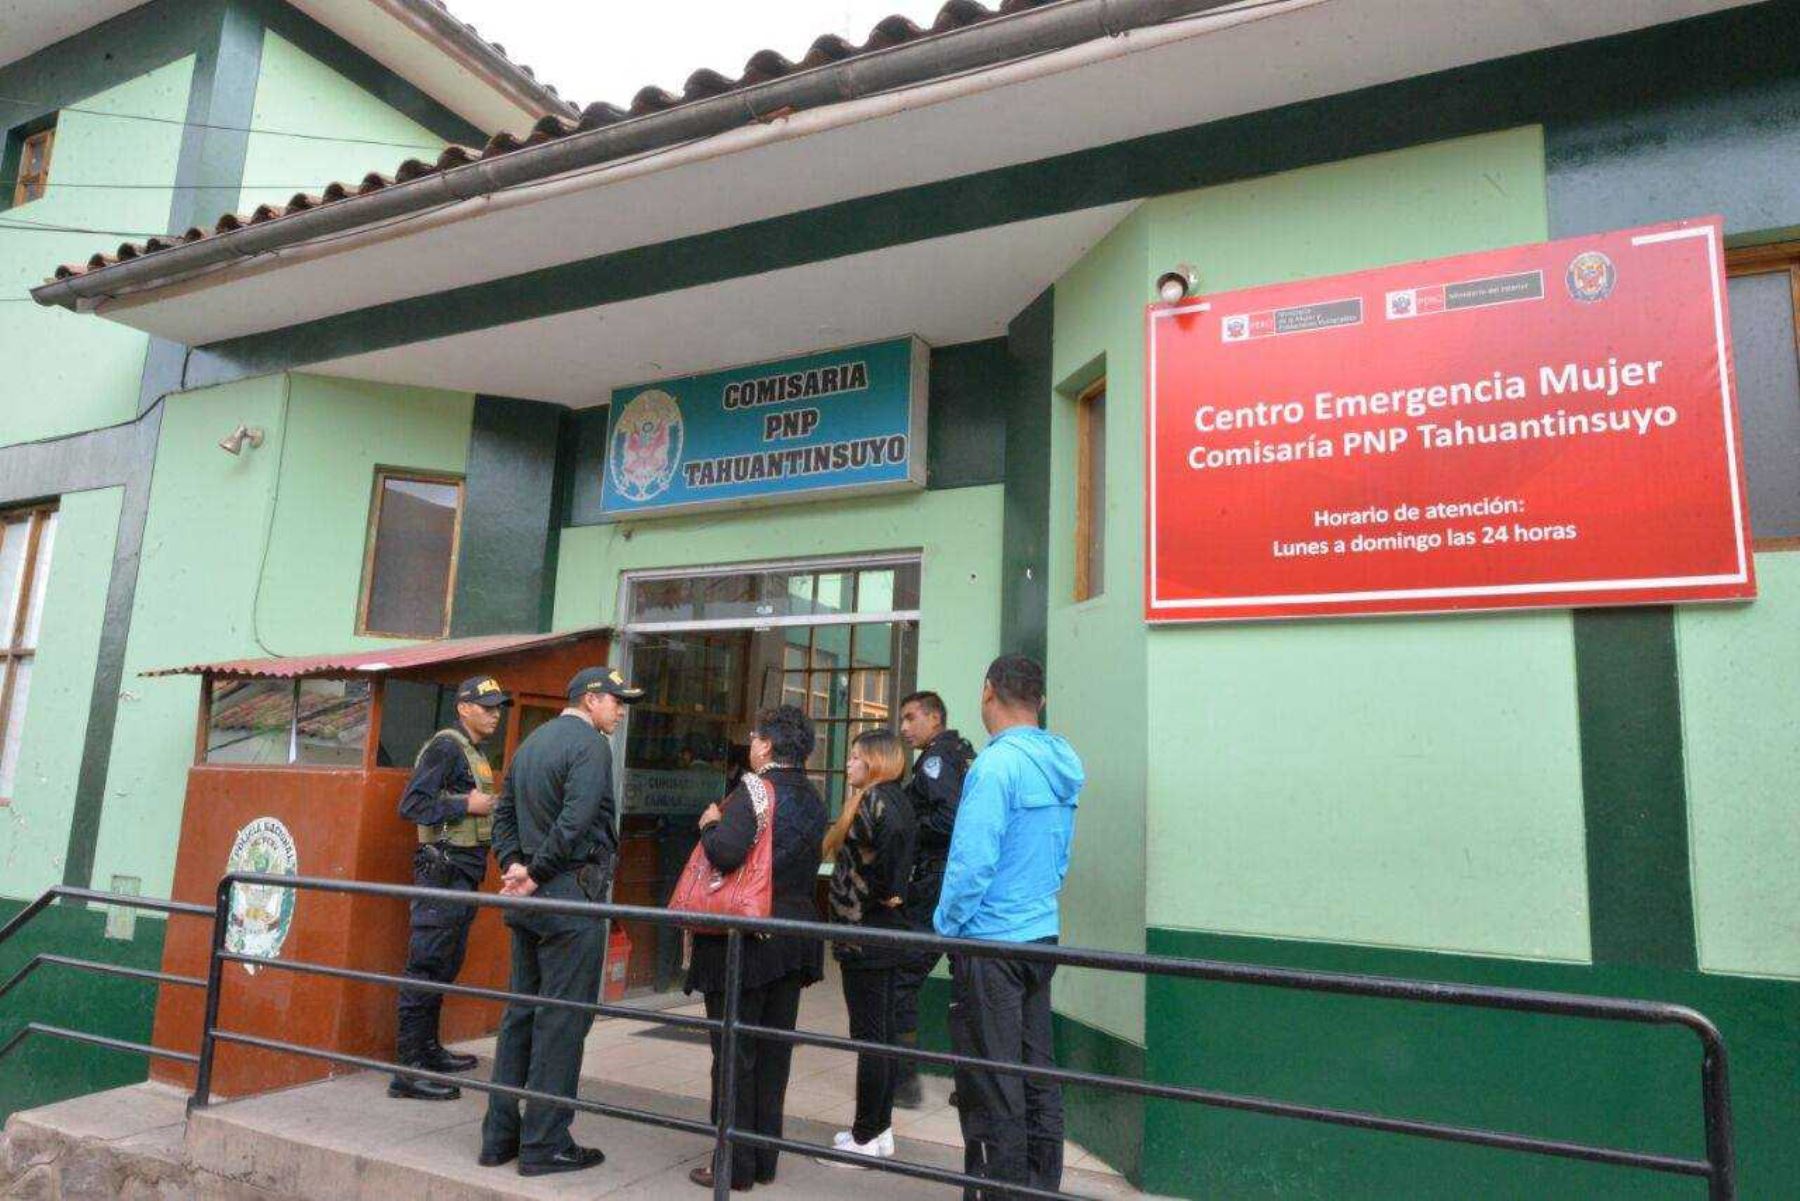 La ministra de la Mujer y Poblaciones Vulnerables (MIMP), Ana María Mendieta, inauguró hoy en Cusco el Centro Emergencia Mujer (CEM) de la comisaría PNP Tahuantinsuyo, que contribuirá a dar asistencia inmediata y especializada a los casos de violencia familiar y/o sexual, cuyas principales víctimas son mujeres.